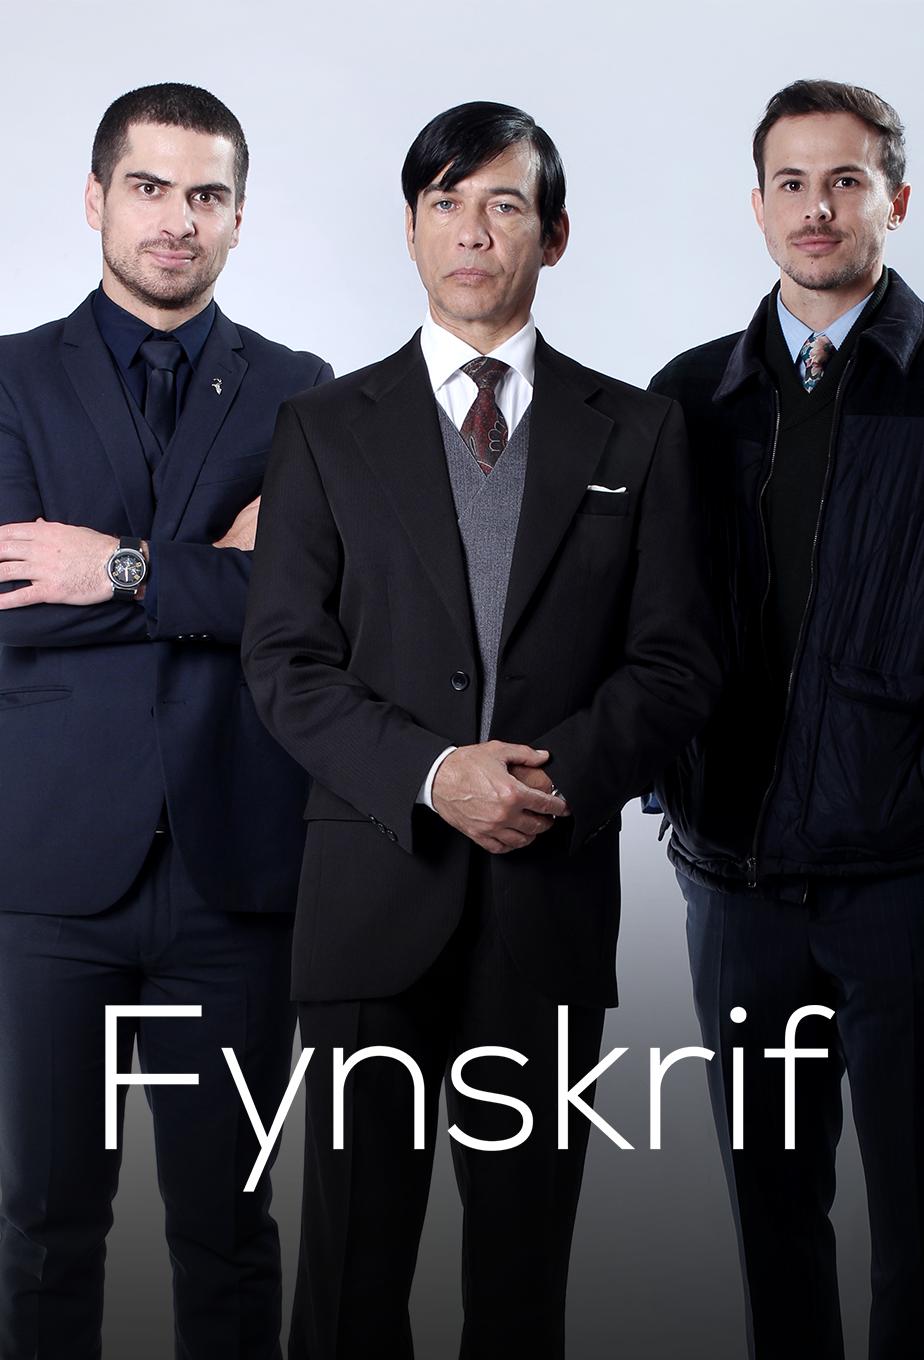 TV ratings for Fynskrif (Fine Print) in Japan. kykNET TV series